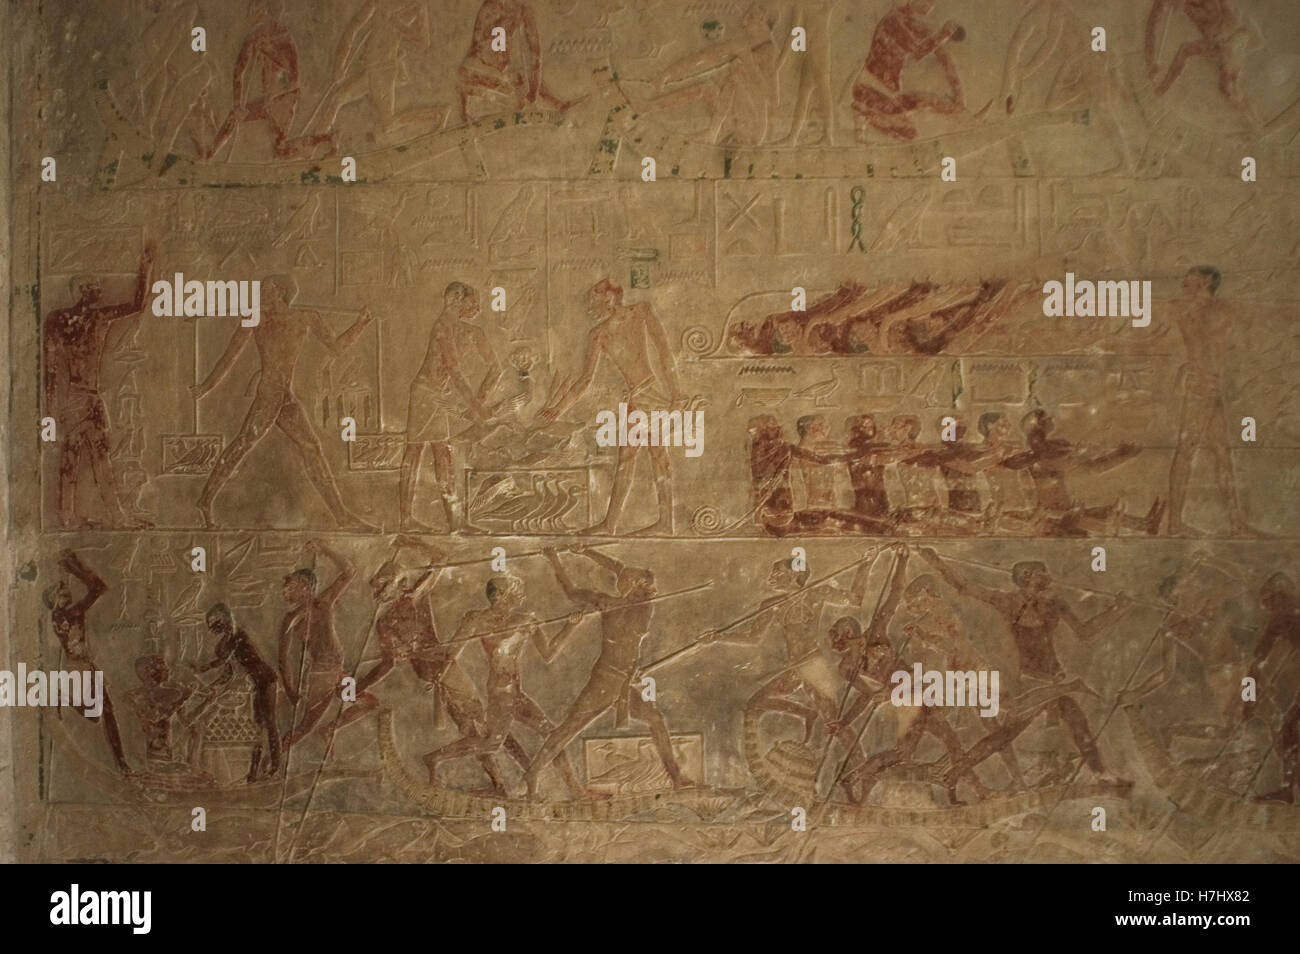 Egipto. Saqqara. Mastaba de Ptahhotep y Akhethotep. 5ª dinastía. Antiguo Reino. Viziers egipcia. El padre y el hijo. Socorro policromada representando escenas de la vida cotidiana. Foto de stock